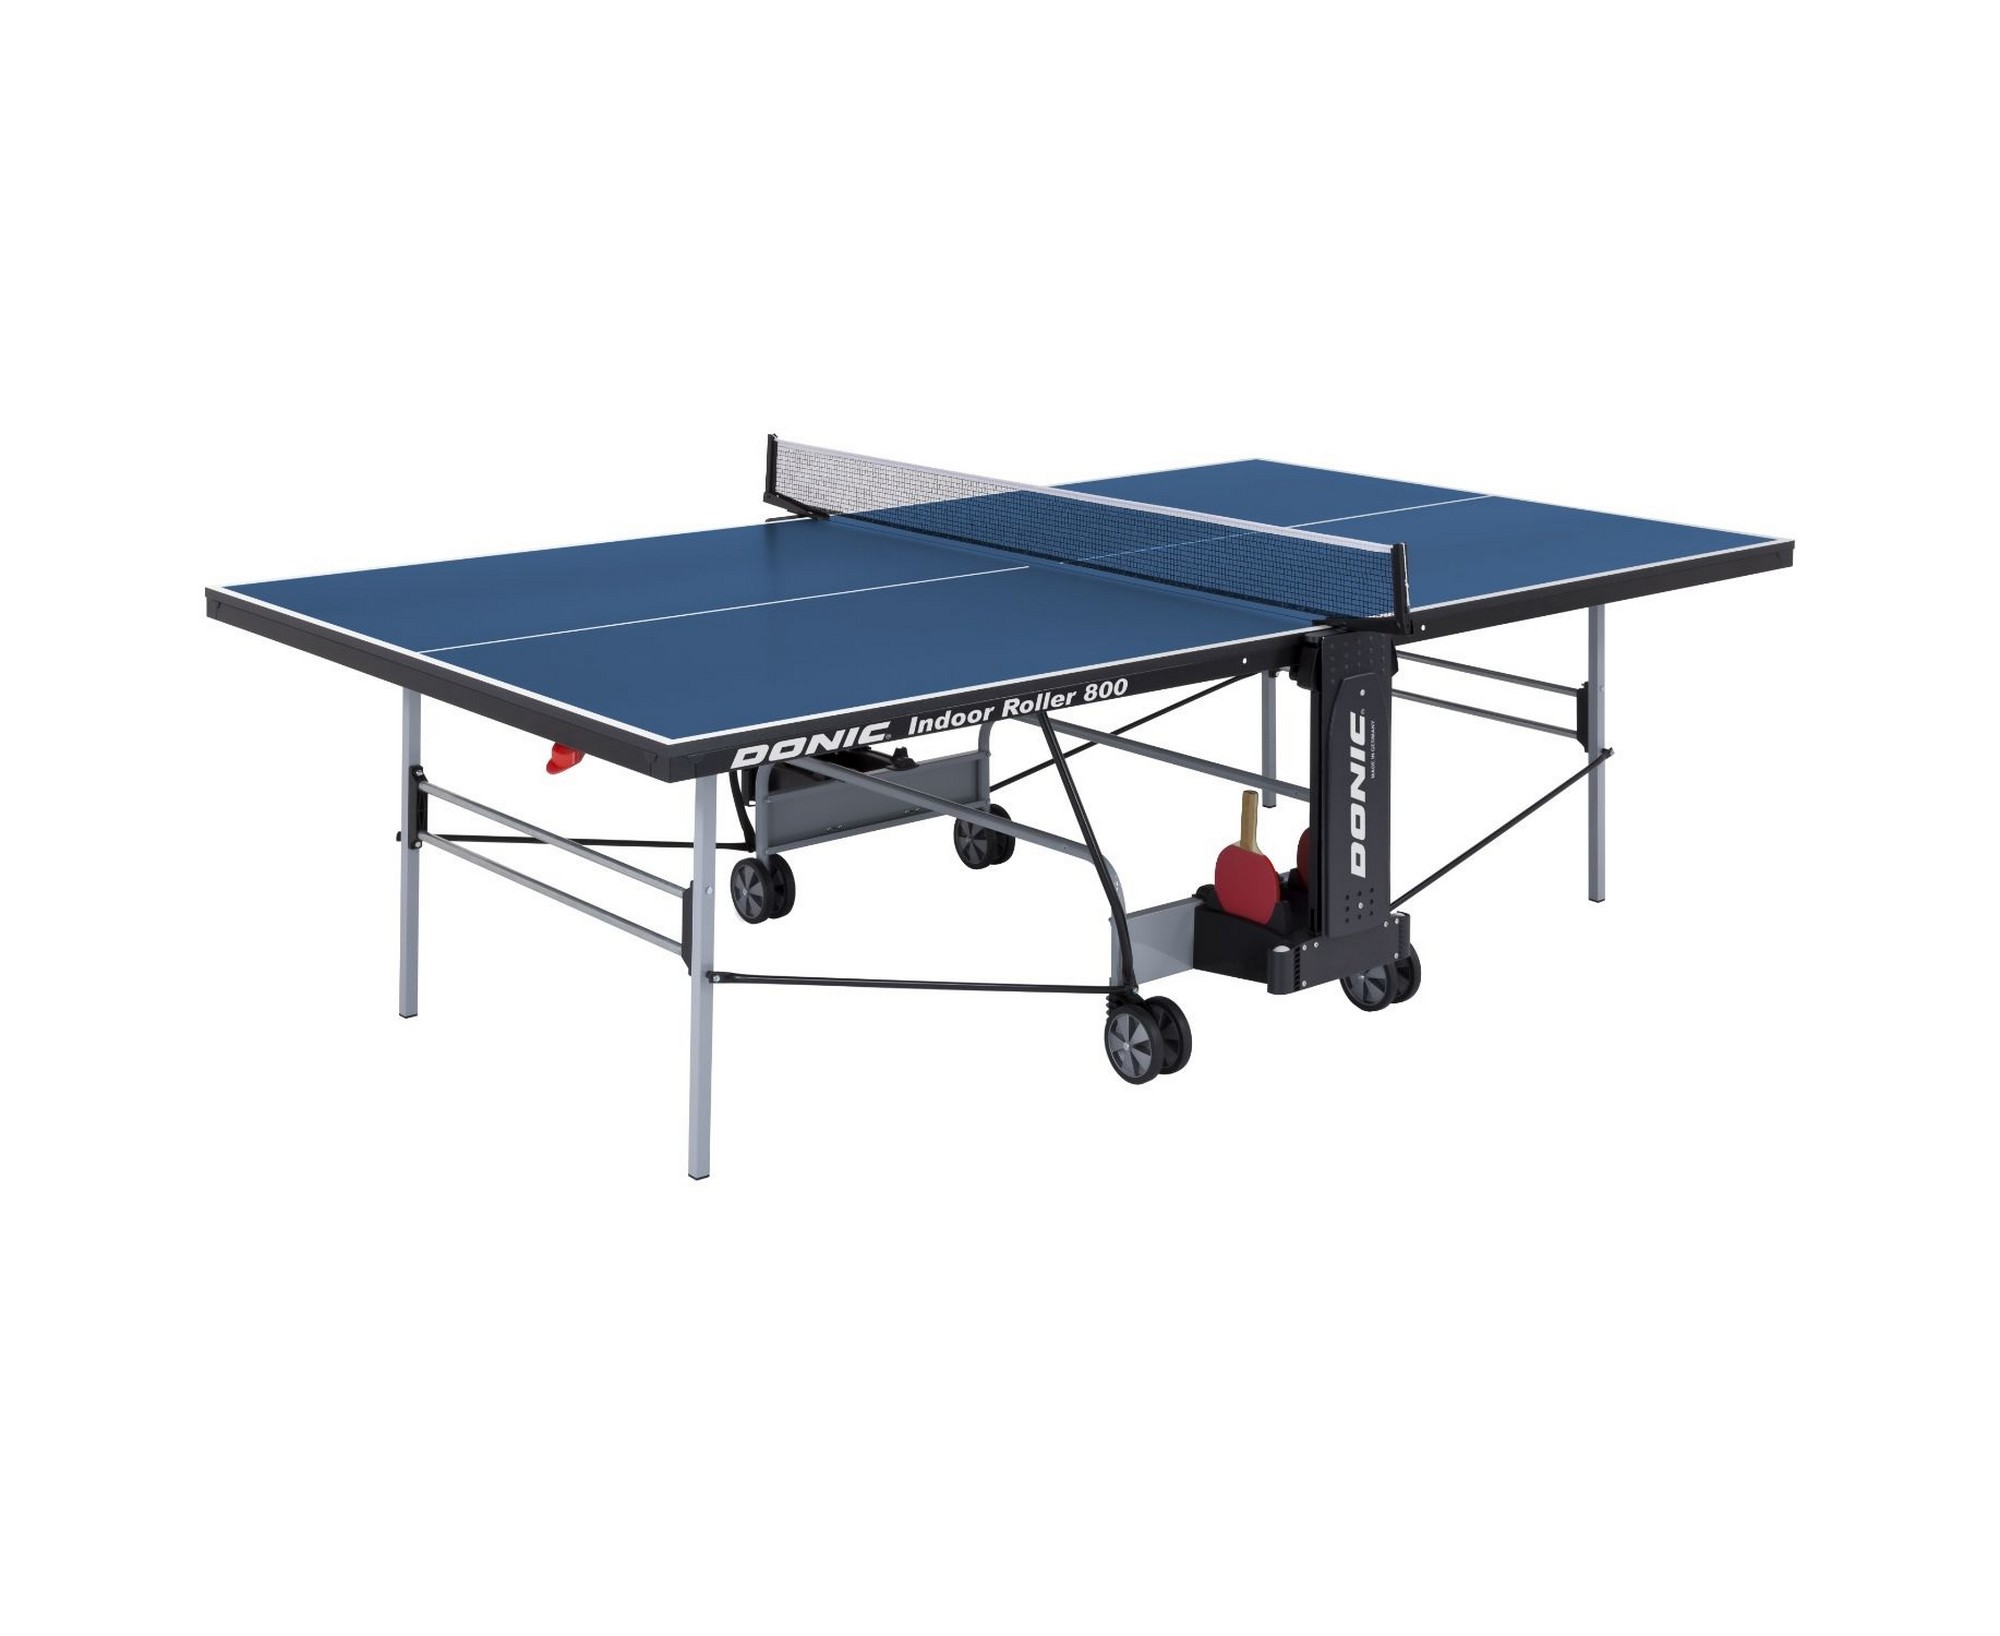 Теннисный стол Donic Indoor Roller 800 230288-B Blue,  - купить со скидкой